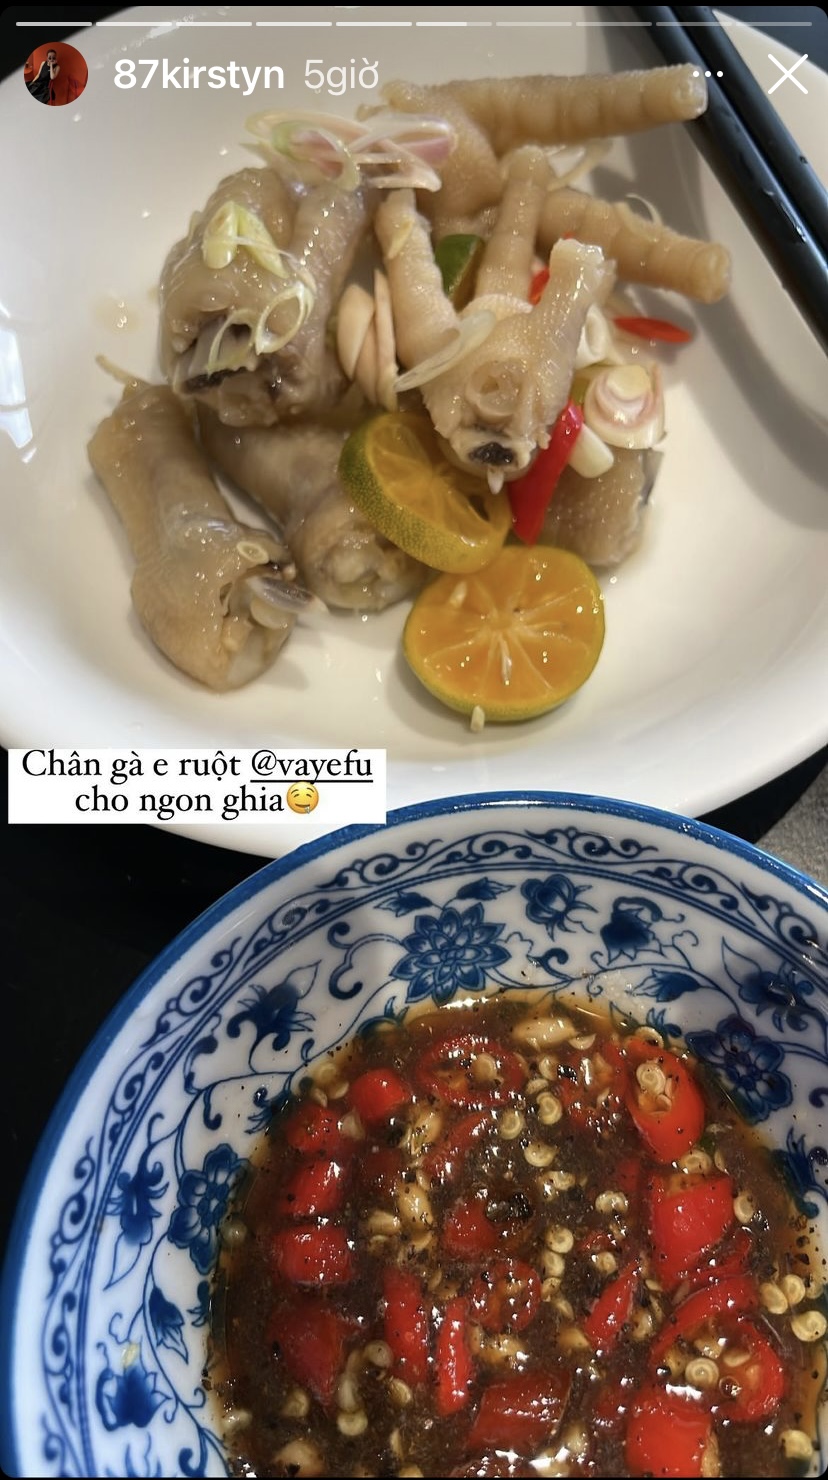 Món chân gà ngâm sả tắc giòn ngon ăn cùng nước chấm cay là món ăn xuất hiện trên bàn ăn nhà Yến Trang - Yến Nhi hôm nay.